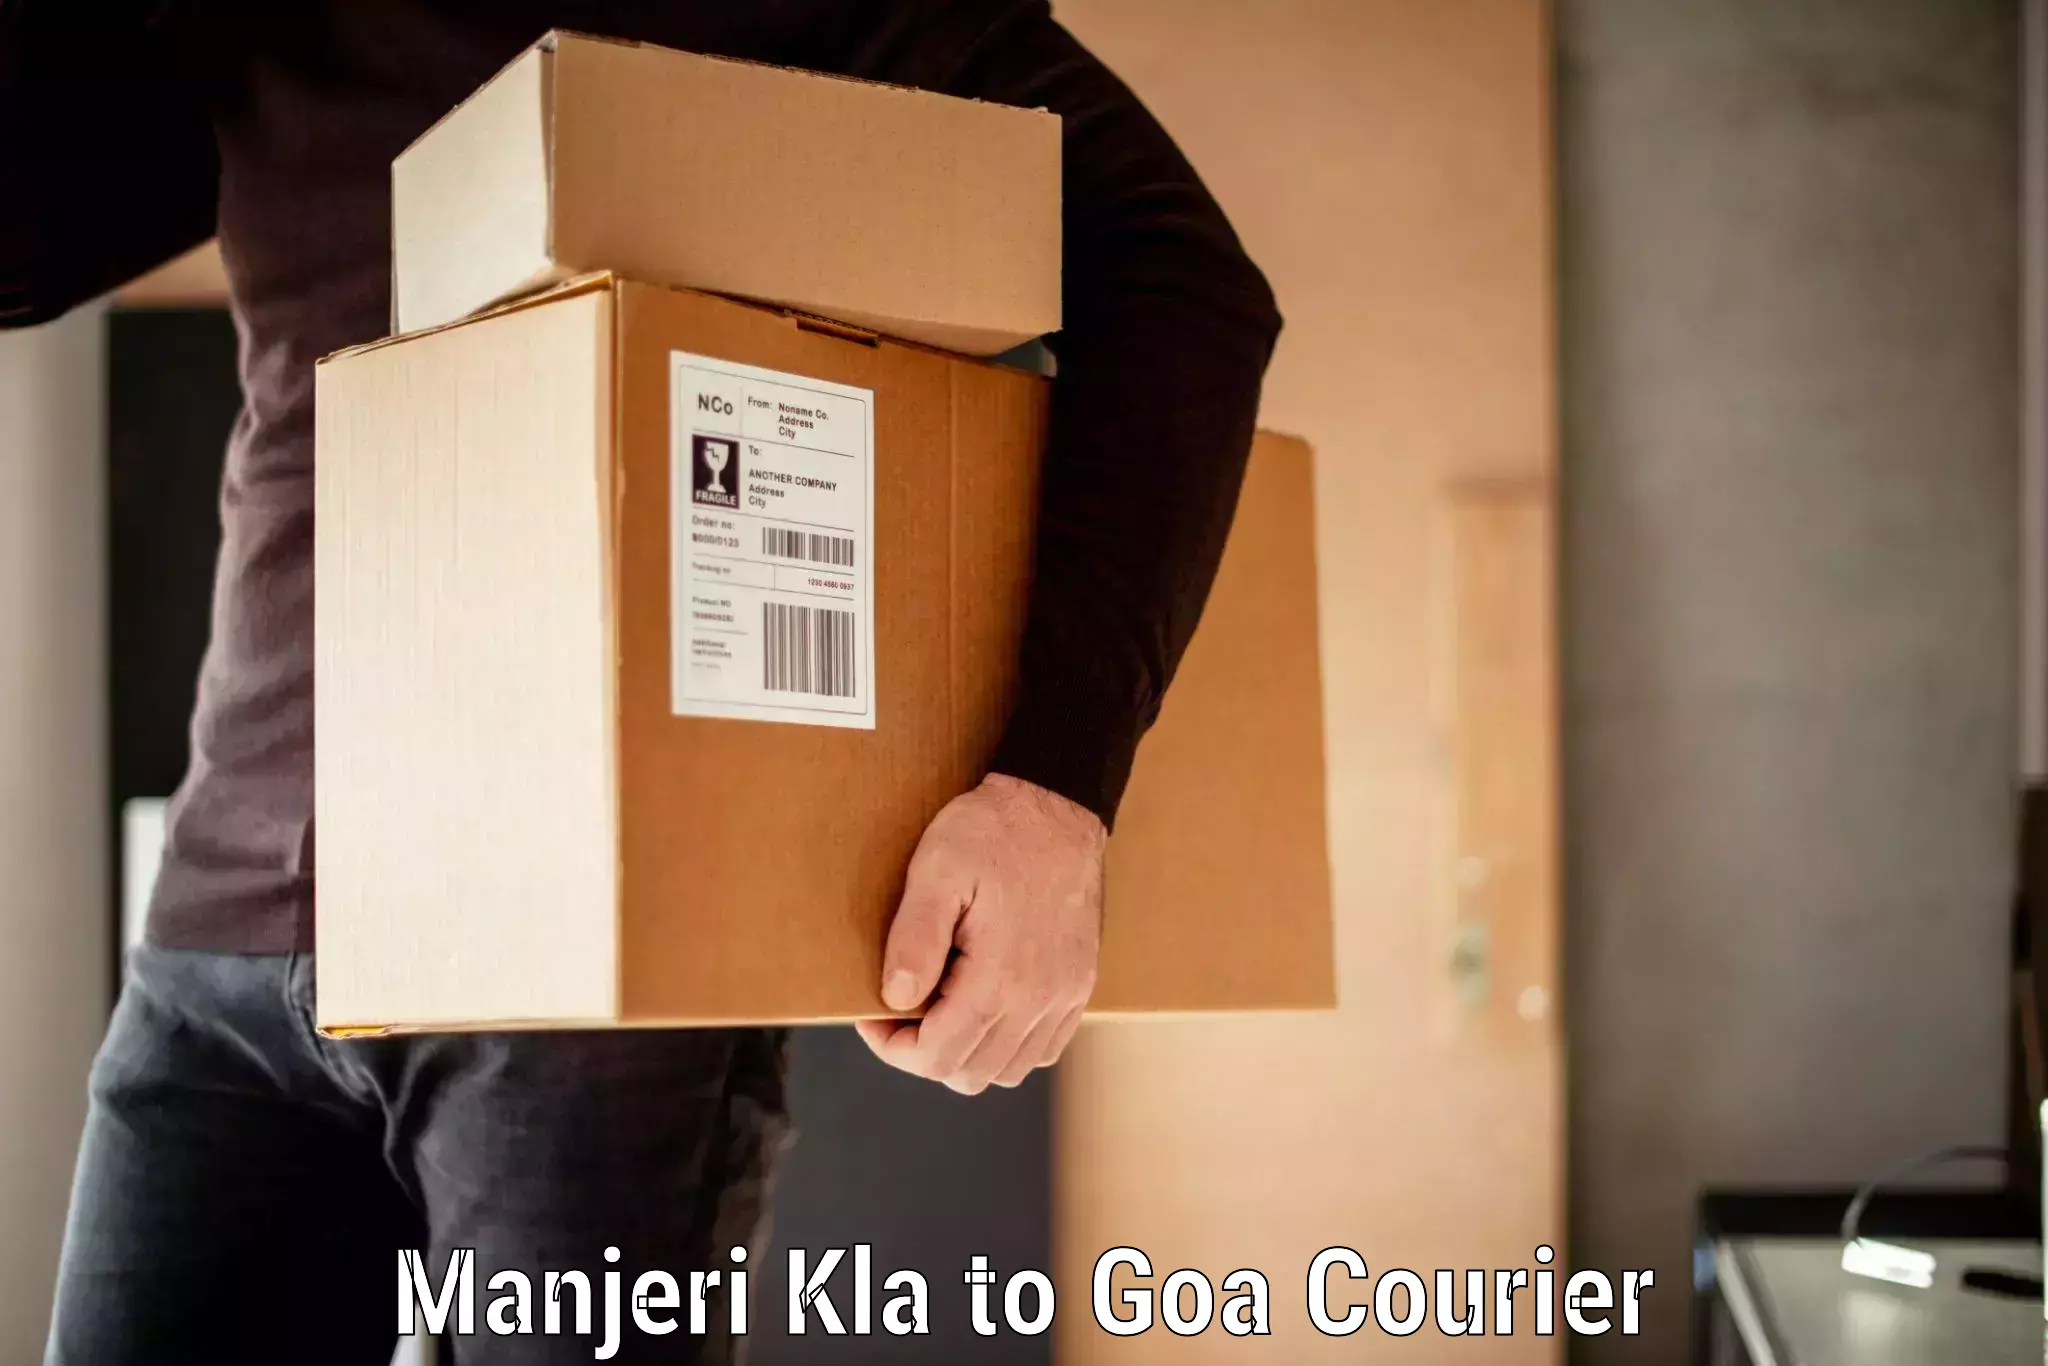 Luggage delivery system Manjeri Kla to Goa